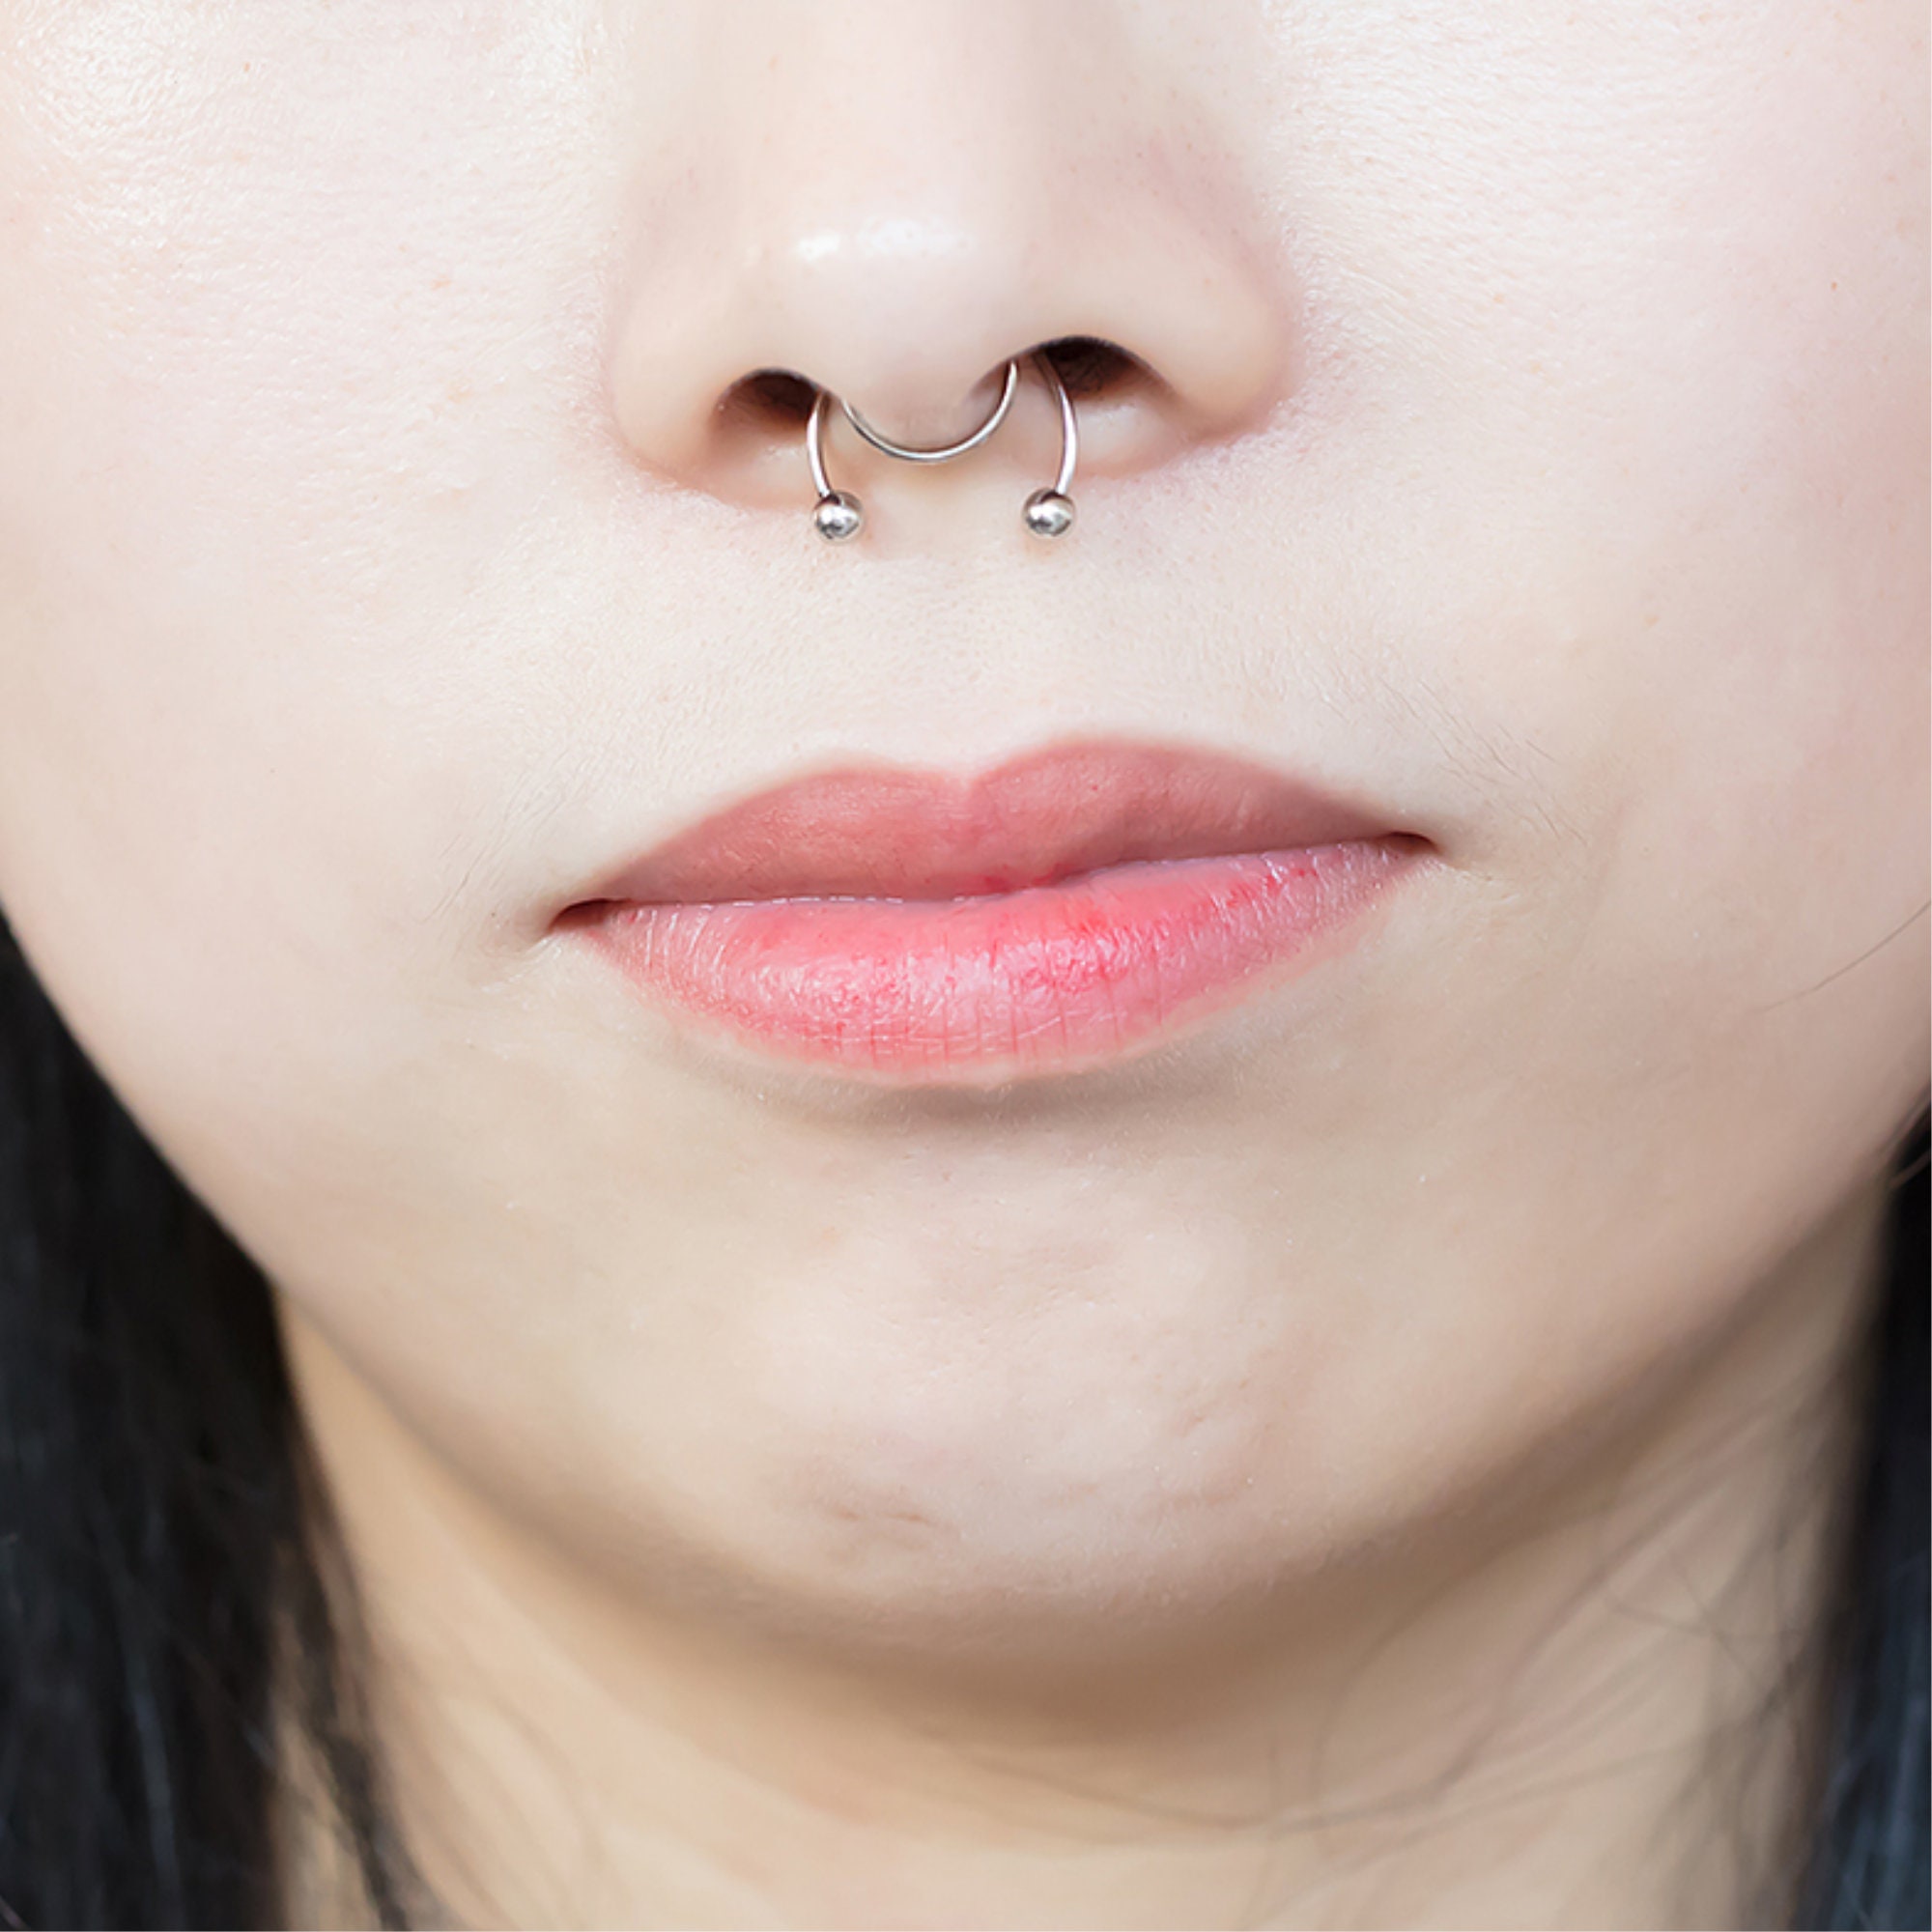 Fake Nose Ring Fake Septum Ring Fake Piercing Non Pierced 